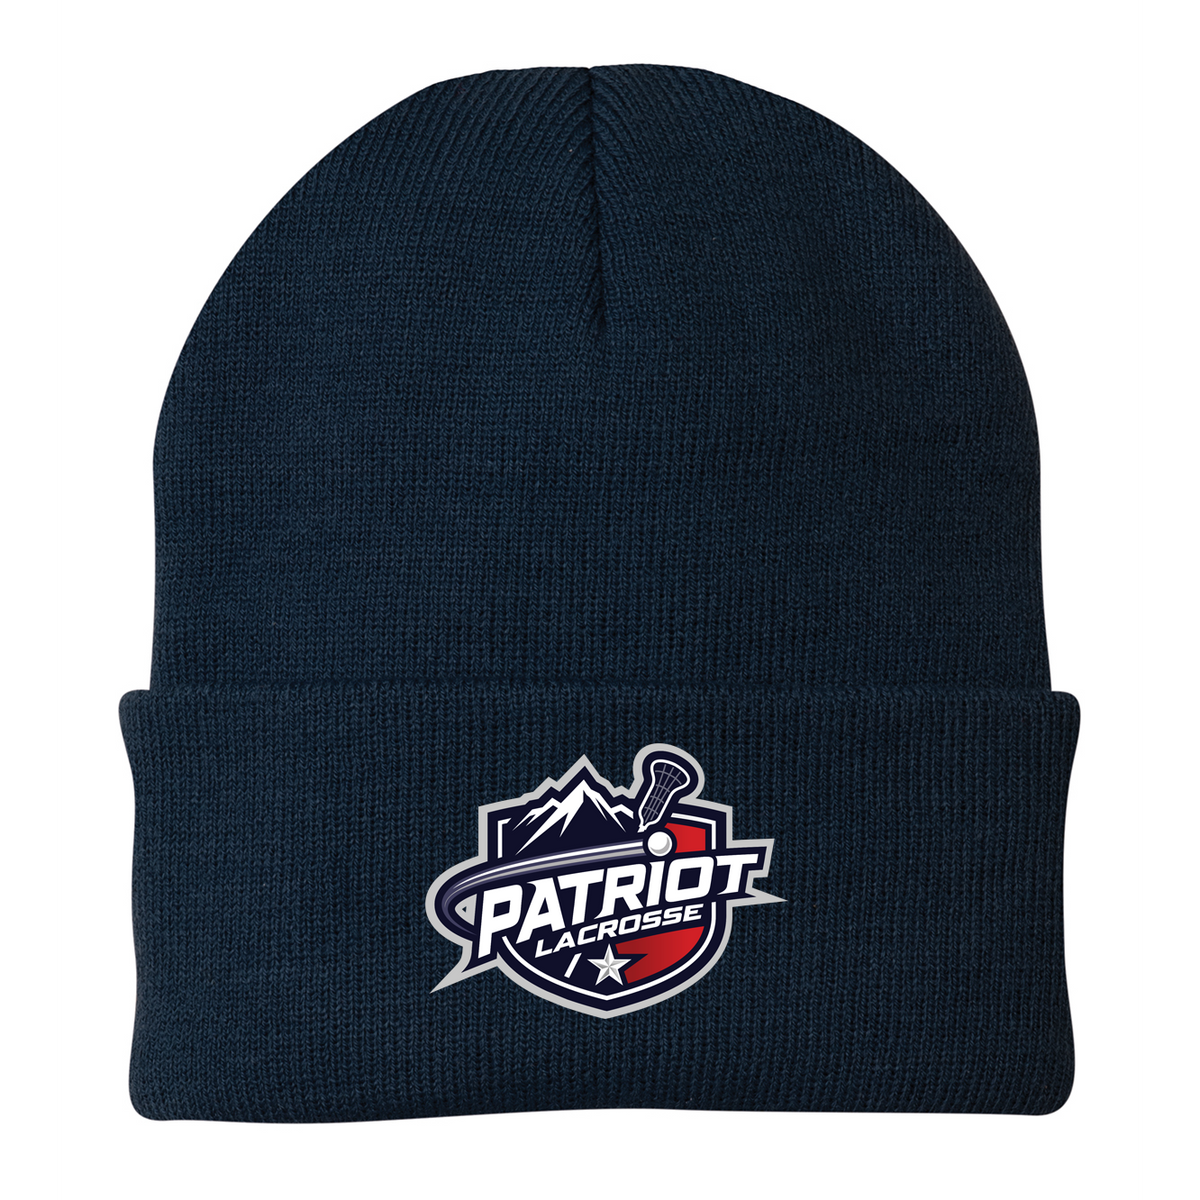 Patriot Lacrosse Knit Beanie